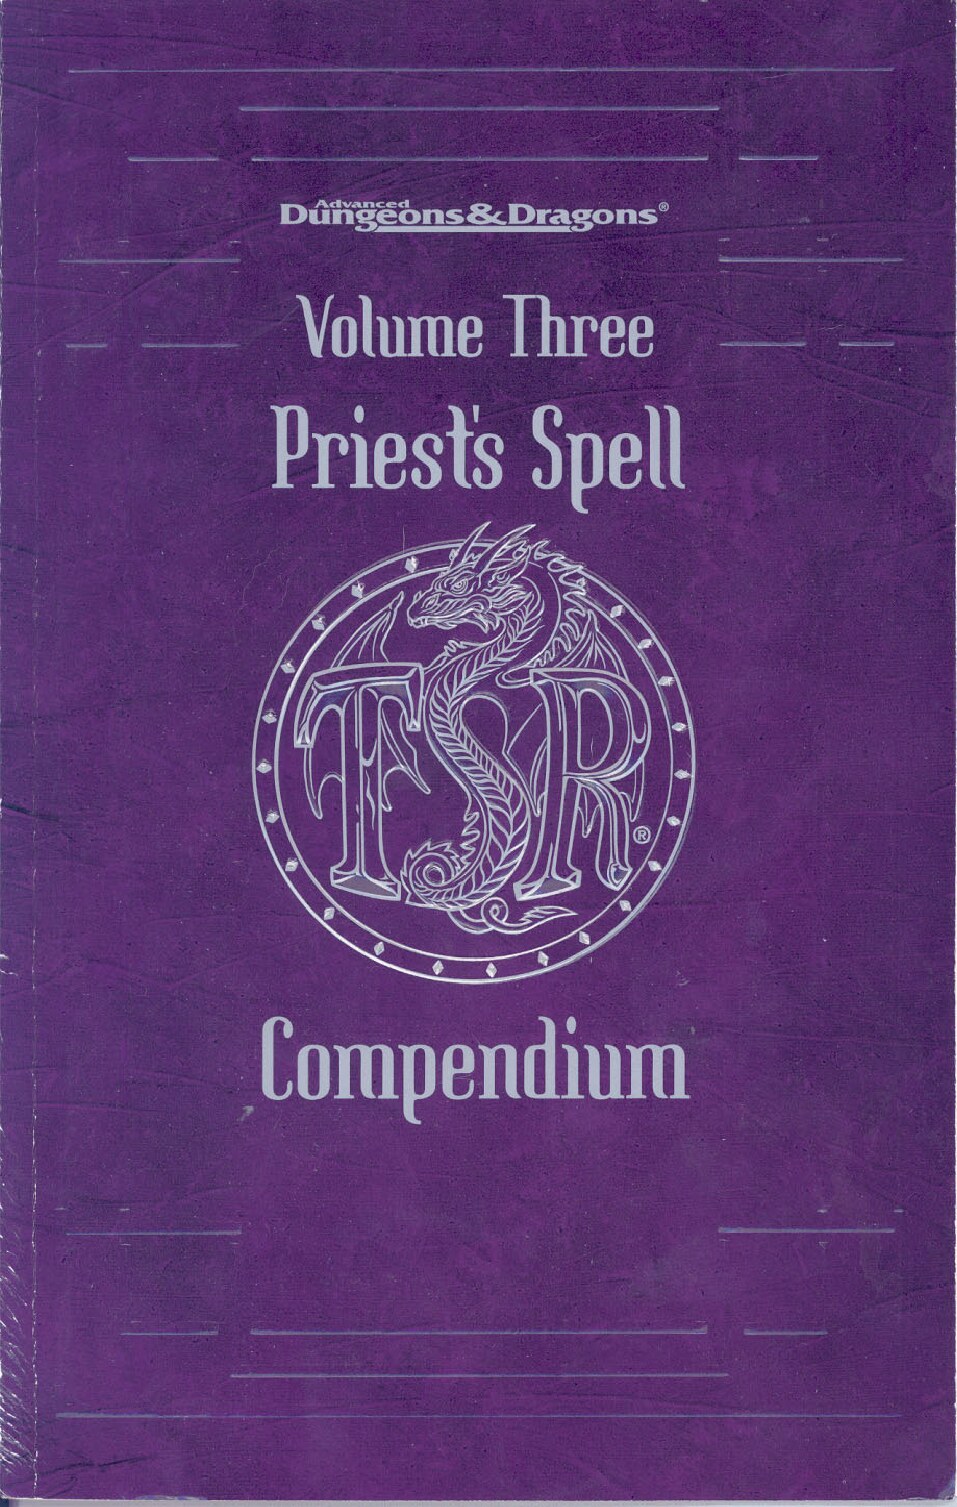 Priest's Spell Compendium: Volume Three